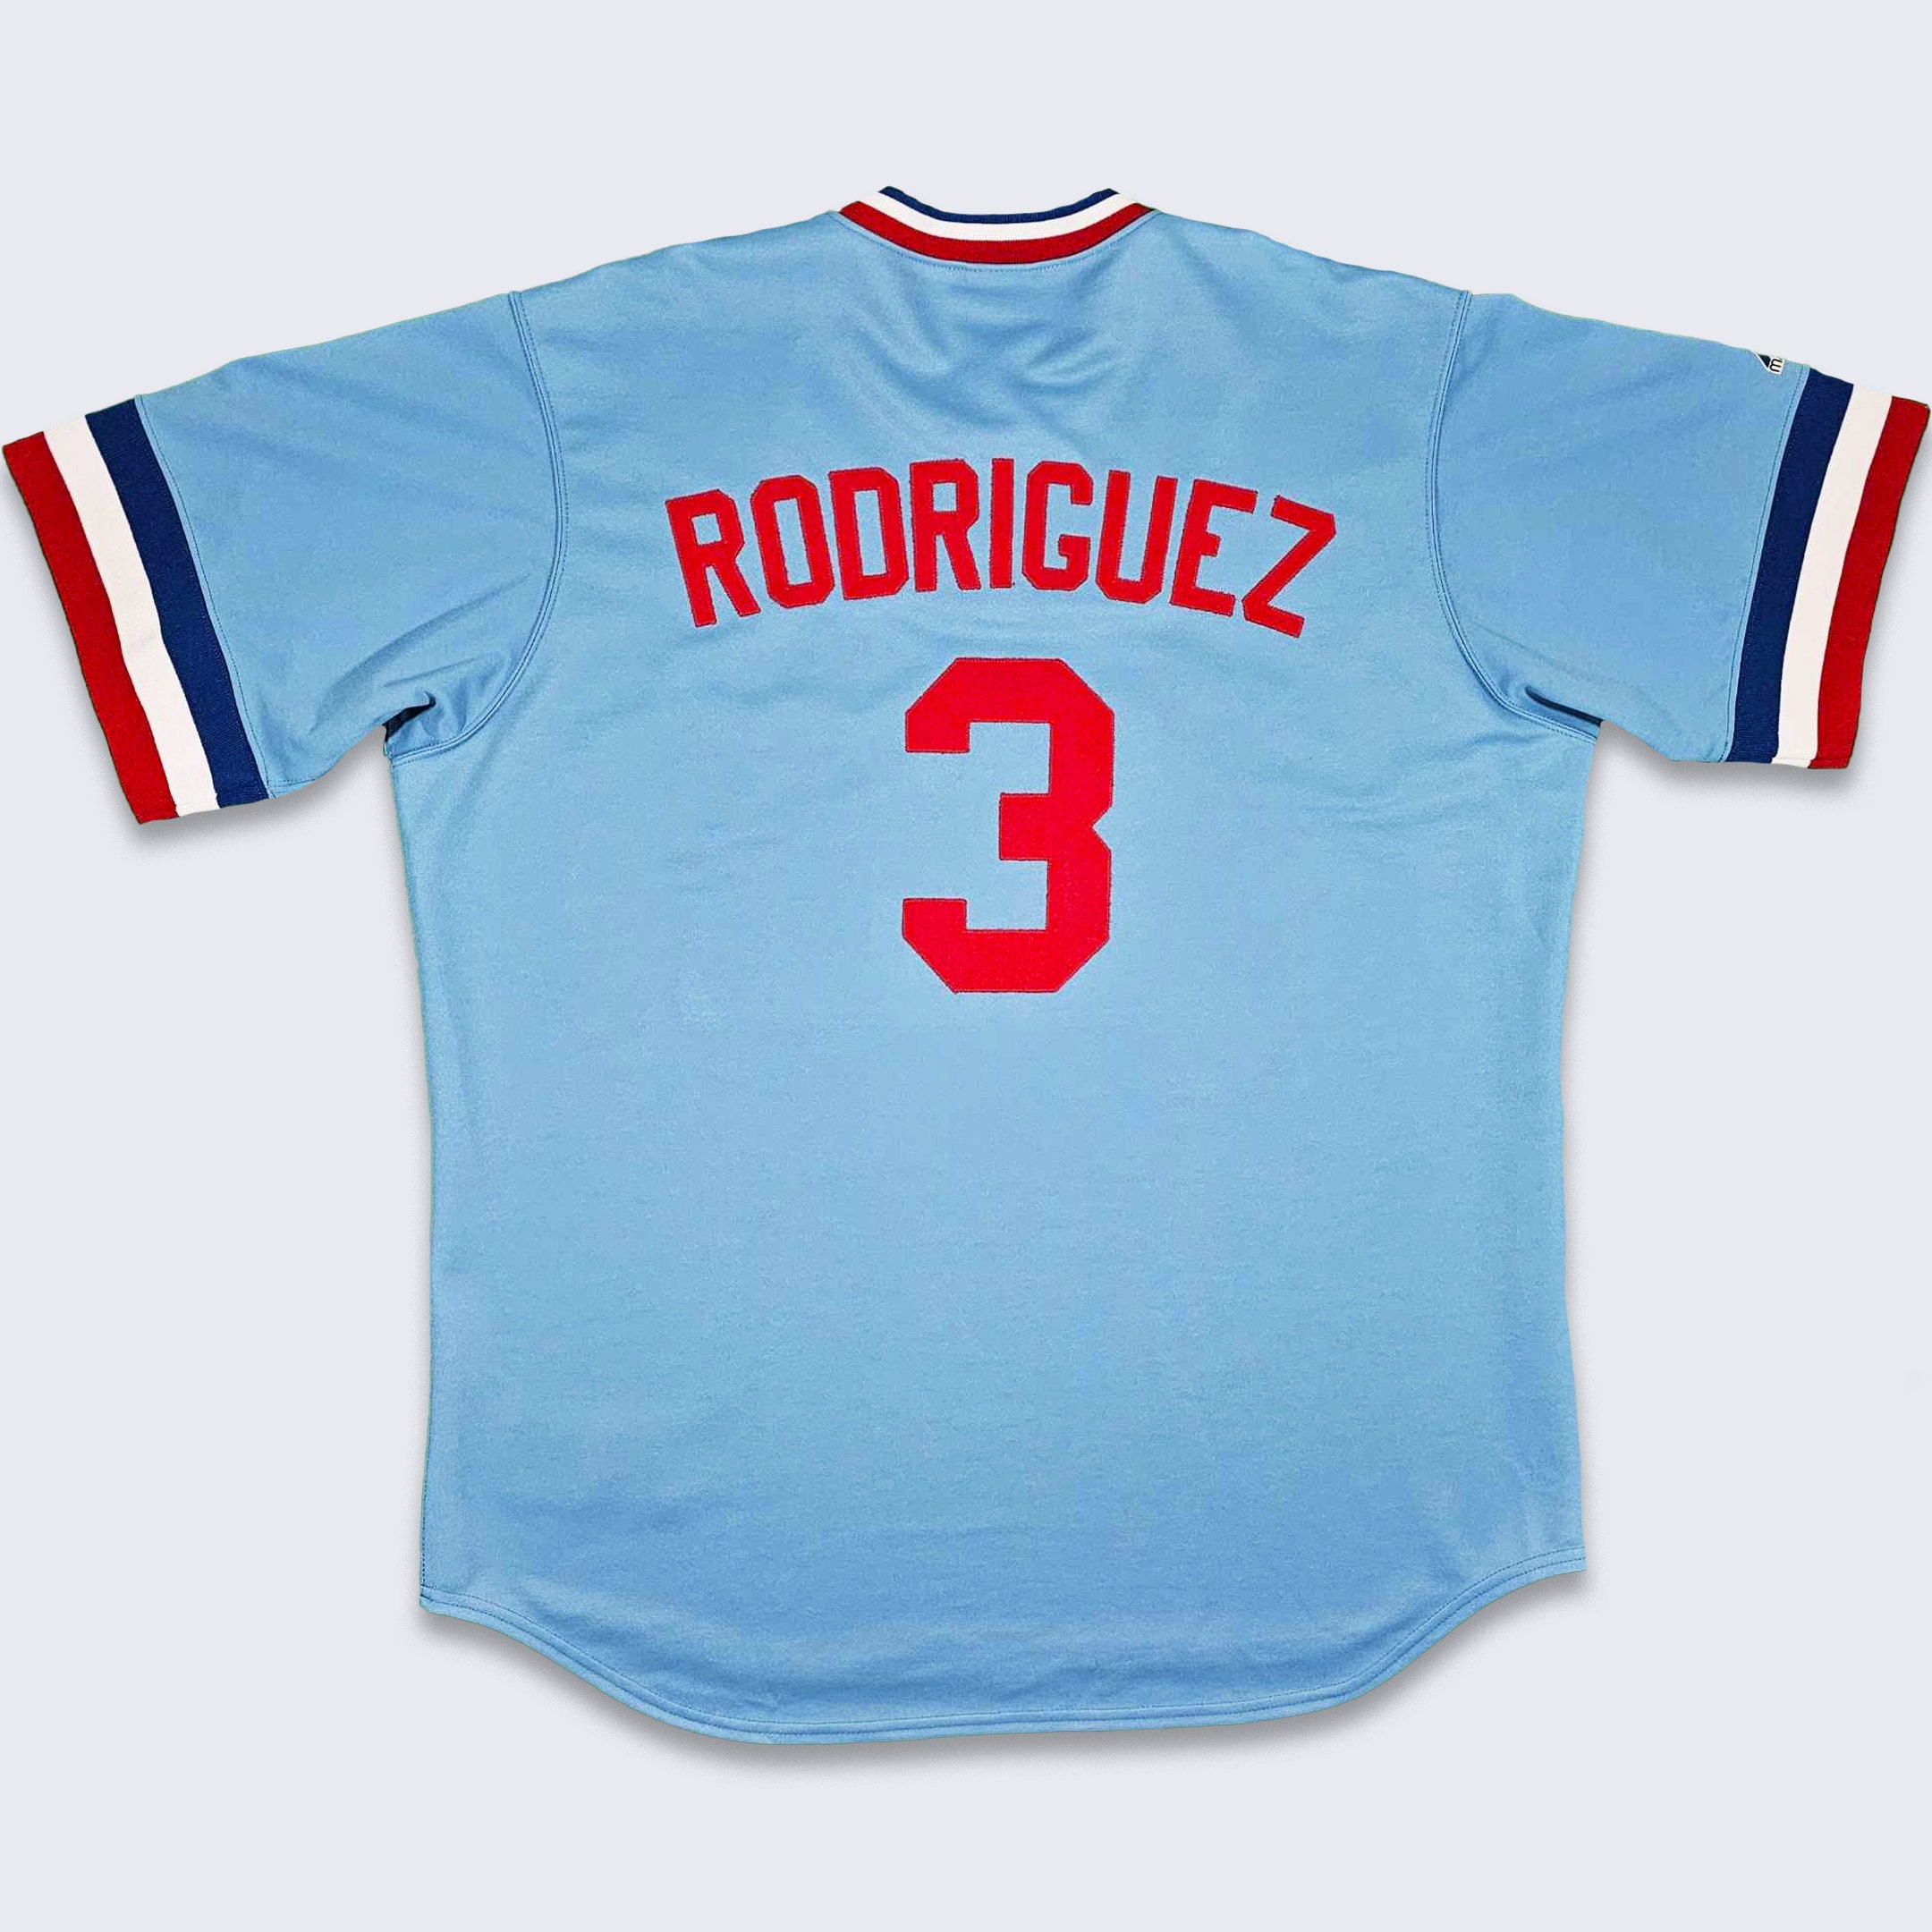 rodriguez game worn jersey